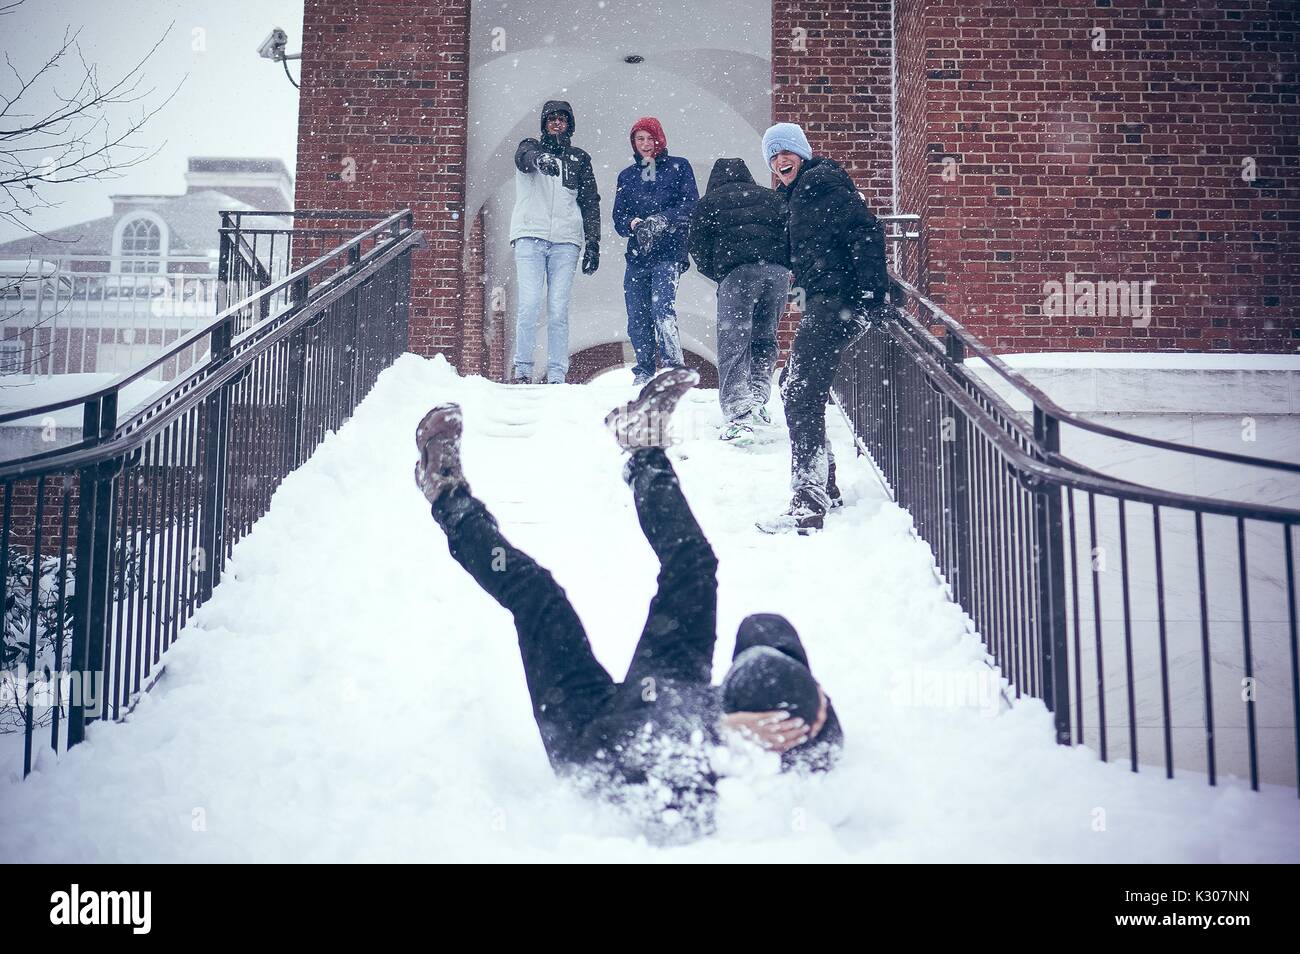 Uno studente scorre verso il basso una scale innevato con le gambe in aria e dei bracci che copre la sua testa, mentre gli altri studenti in marcia sulla neve il sorriso e allegria in cima alle scale, in un giorno di neve alla Johns Hopkins University, Baltimora, Maryland, 2016. Foto Stock